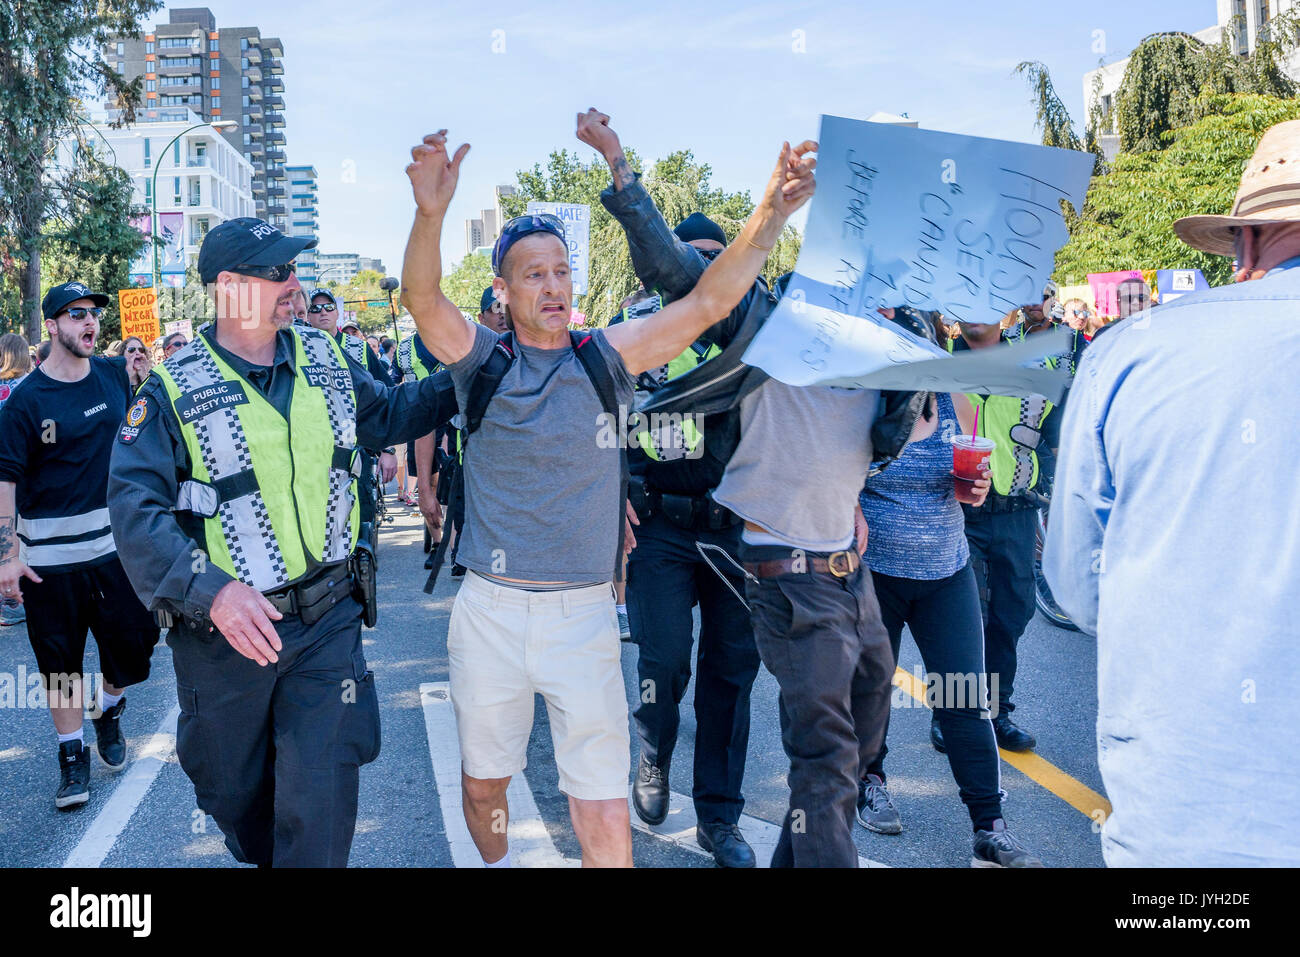 Vancouver, Canada. Août 19, 2017. L'homme a des réfugiés anti- poster arracha au grand rassemblement, à l'Hôtel de Ville, Vancouver, Colombie-Britannique, Canada. Crédit : Michael Wheatley/Alamy Live News Banque D'Images